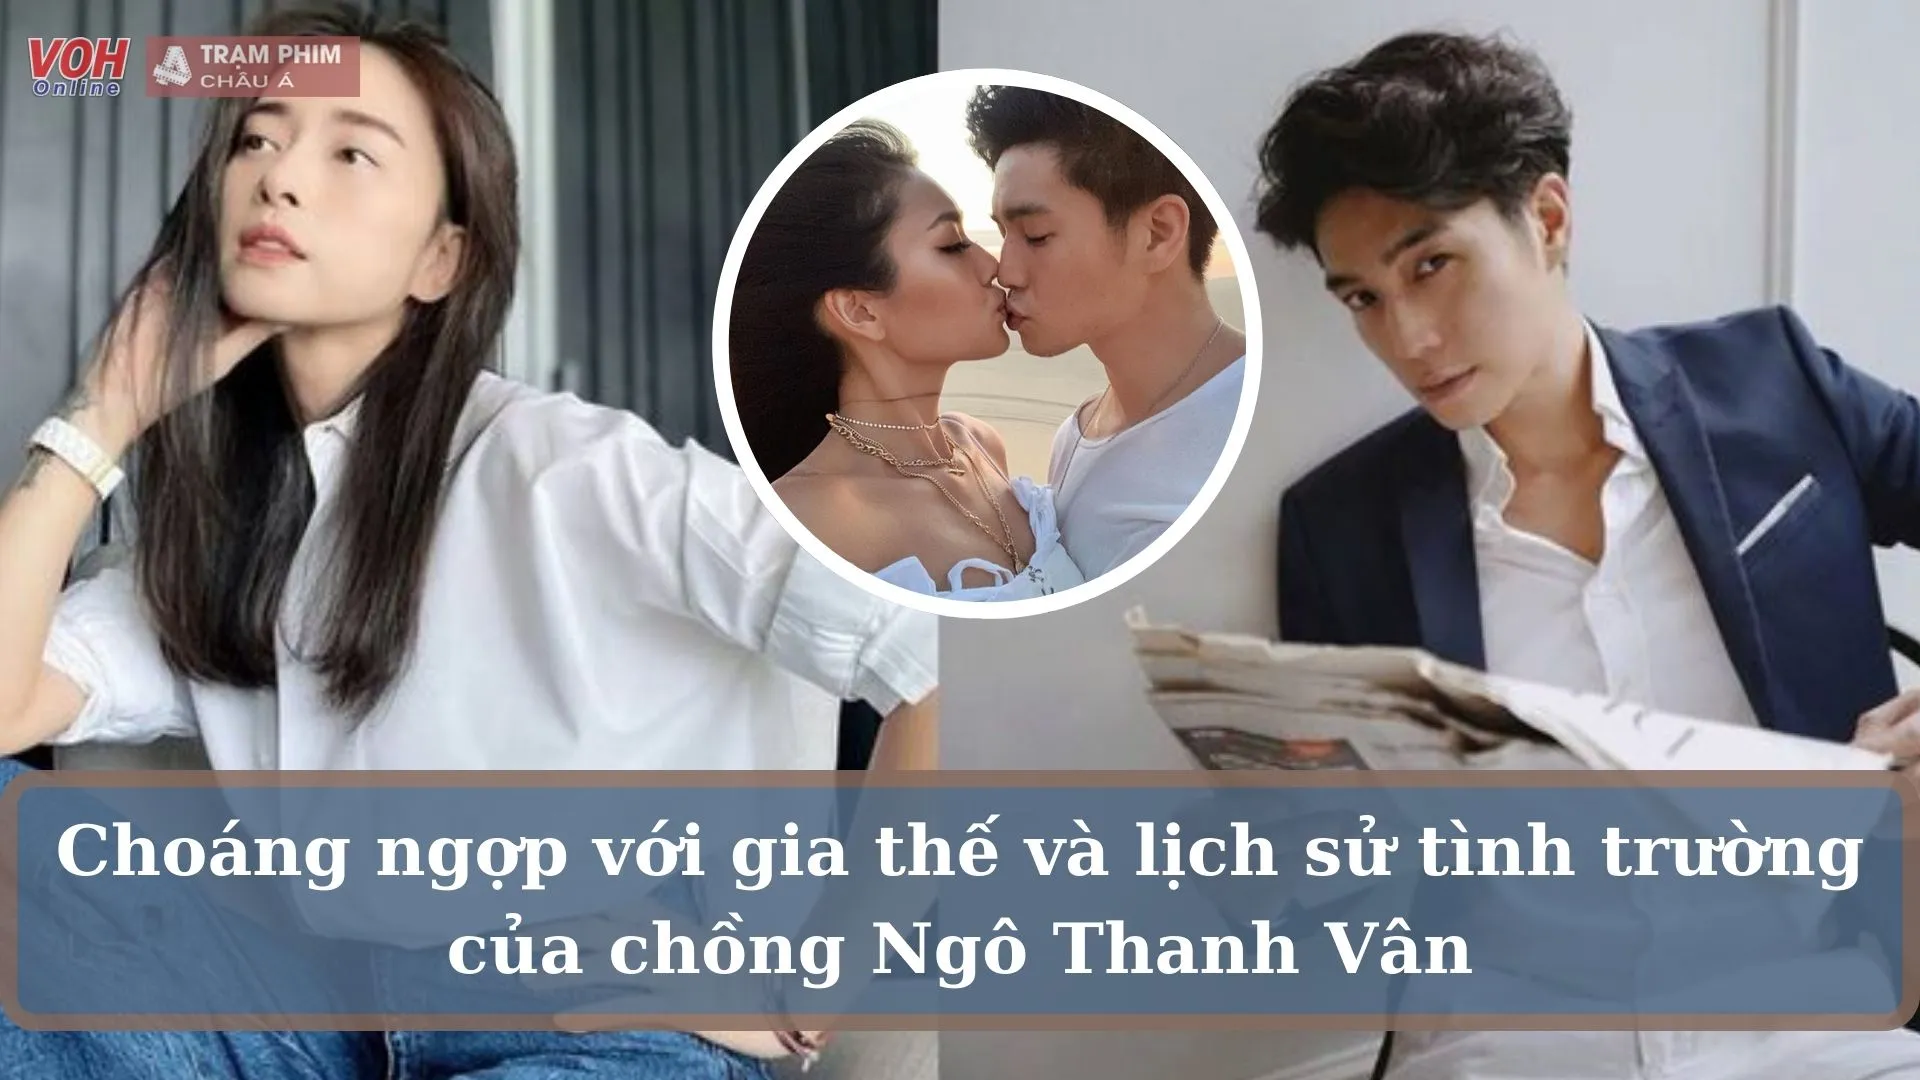 Huy Trần - chồng sắp cưới Ngô Thanh Vân là chàng trai hoàn hảo đến mức nào?